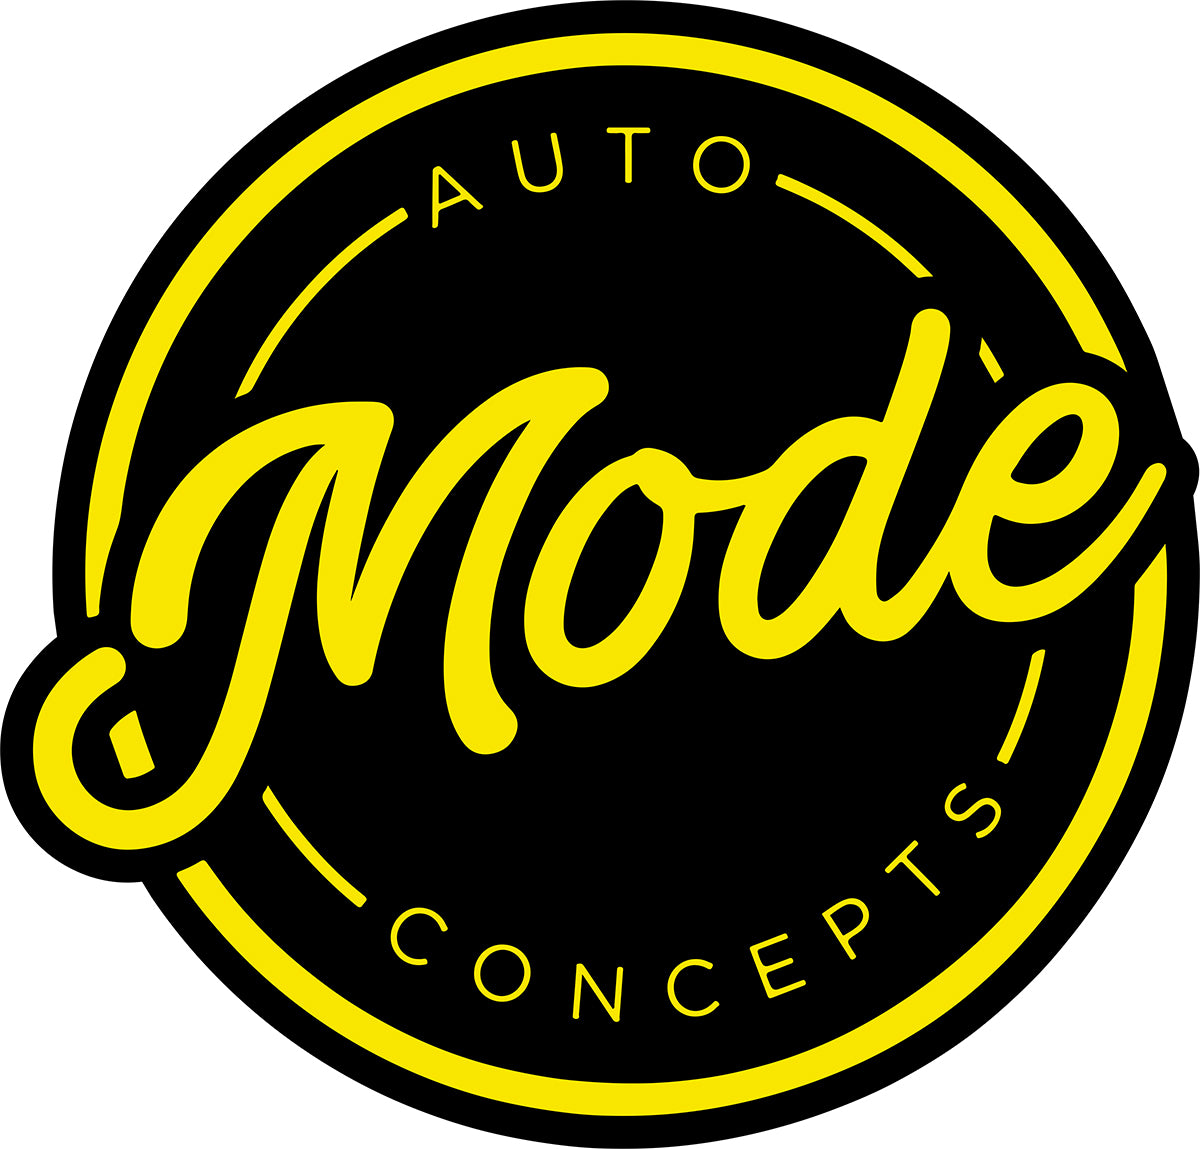 MODE Auto Concepts Sticker Round - Small 60mm - MODE Auto Concepts